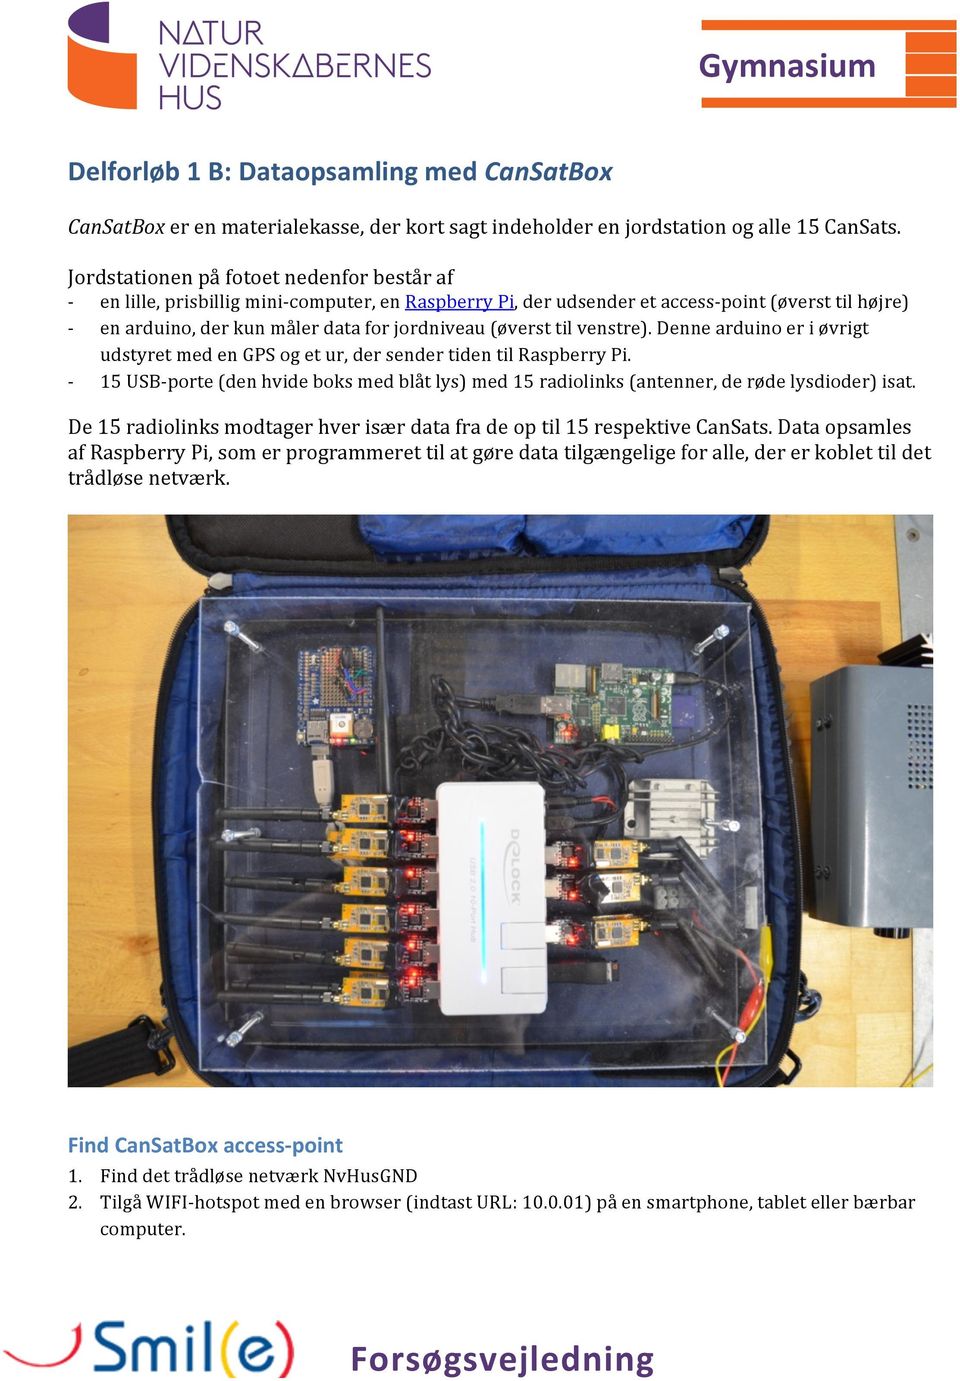 venstre). Denne arduino er i øvrigt udstyret med en GPS og et ur, der sender tiden til Raspberry Pi. 15 USBporte (den hvide boks med blåt lys) med 15 radiolinks (antenner, de røde lysdioder) isat.